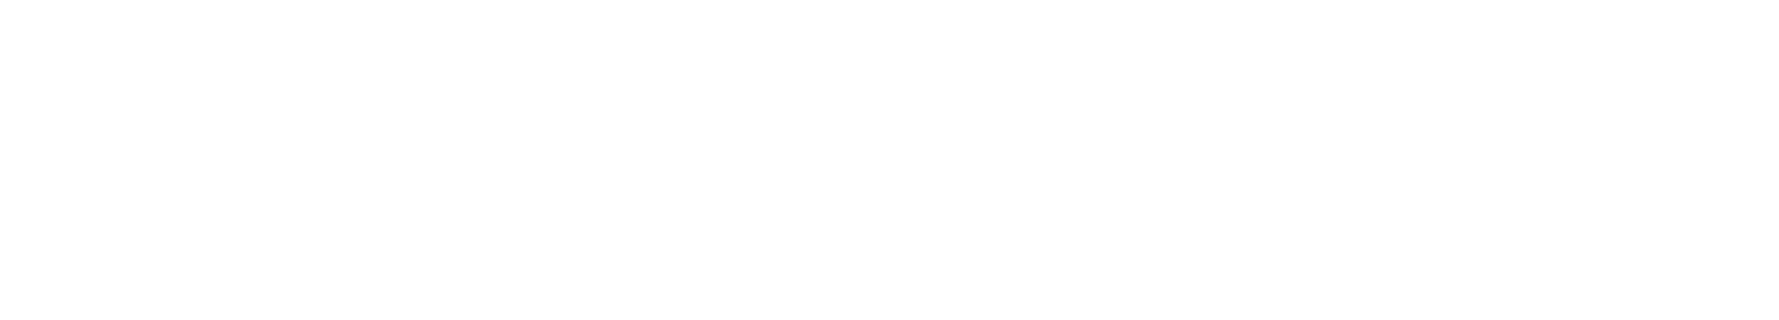 Imagen de logotipo del IFT.